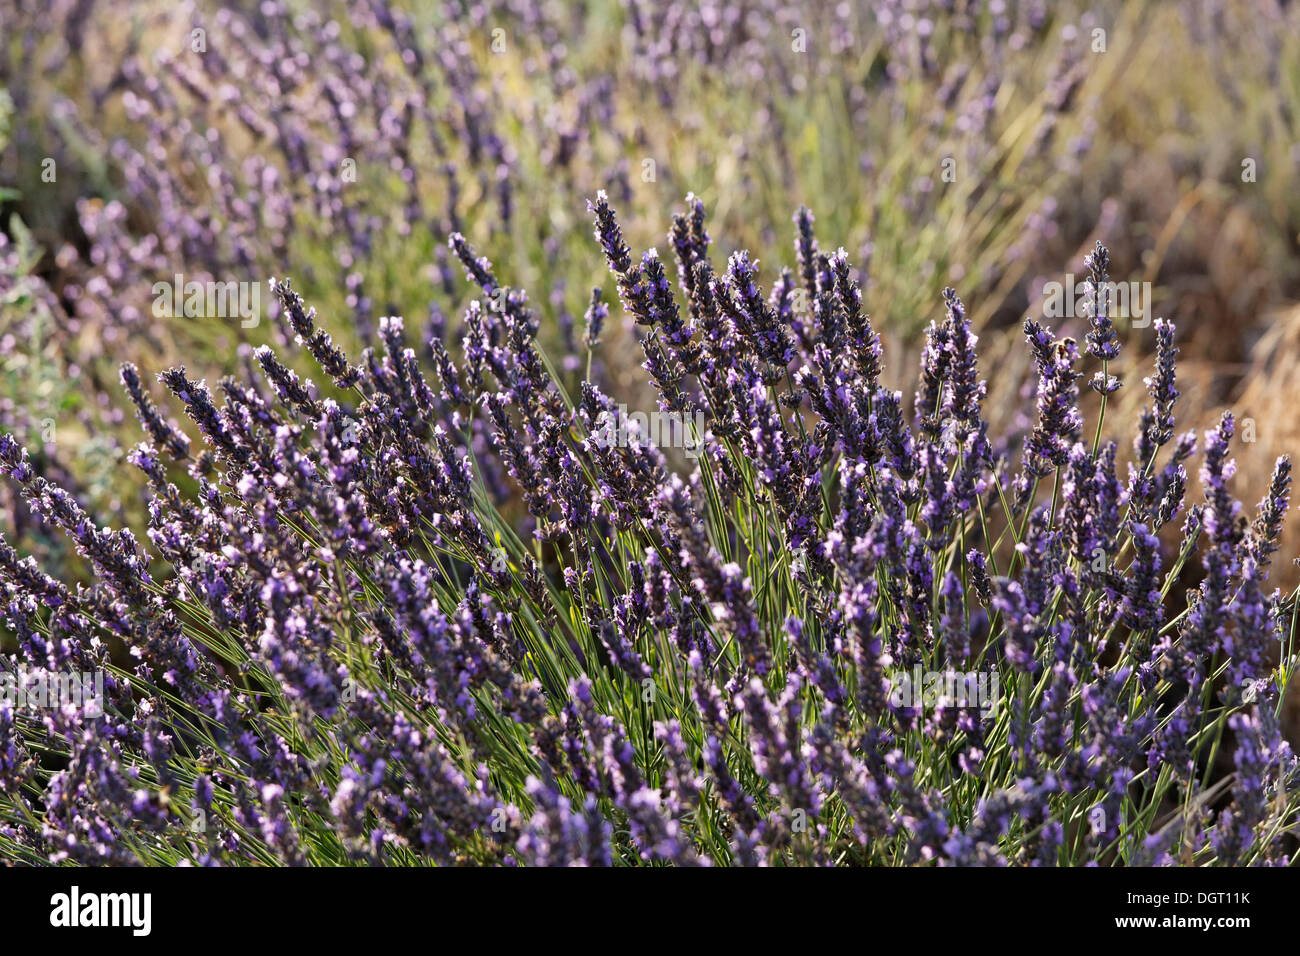 Lavender field on the Valensole plateau, Riez, Provence region, Département Alpes-de-Haute-Provence, France, Europe Stock Photo